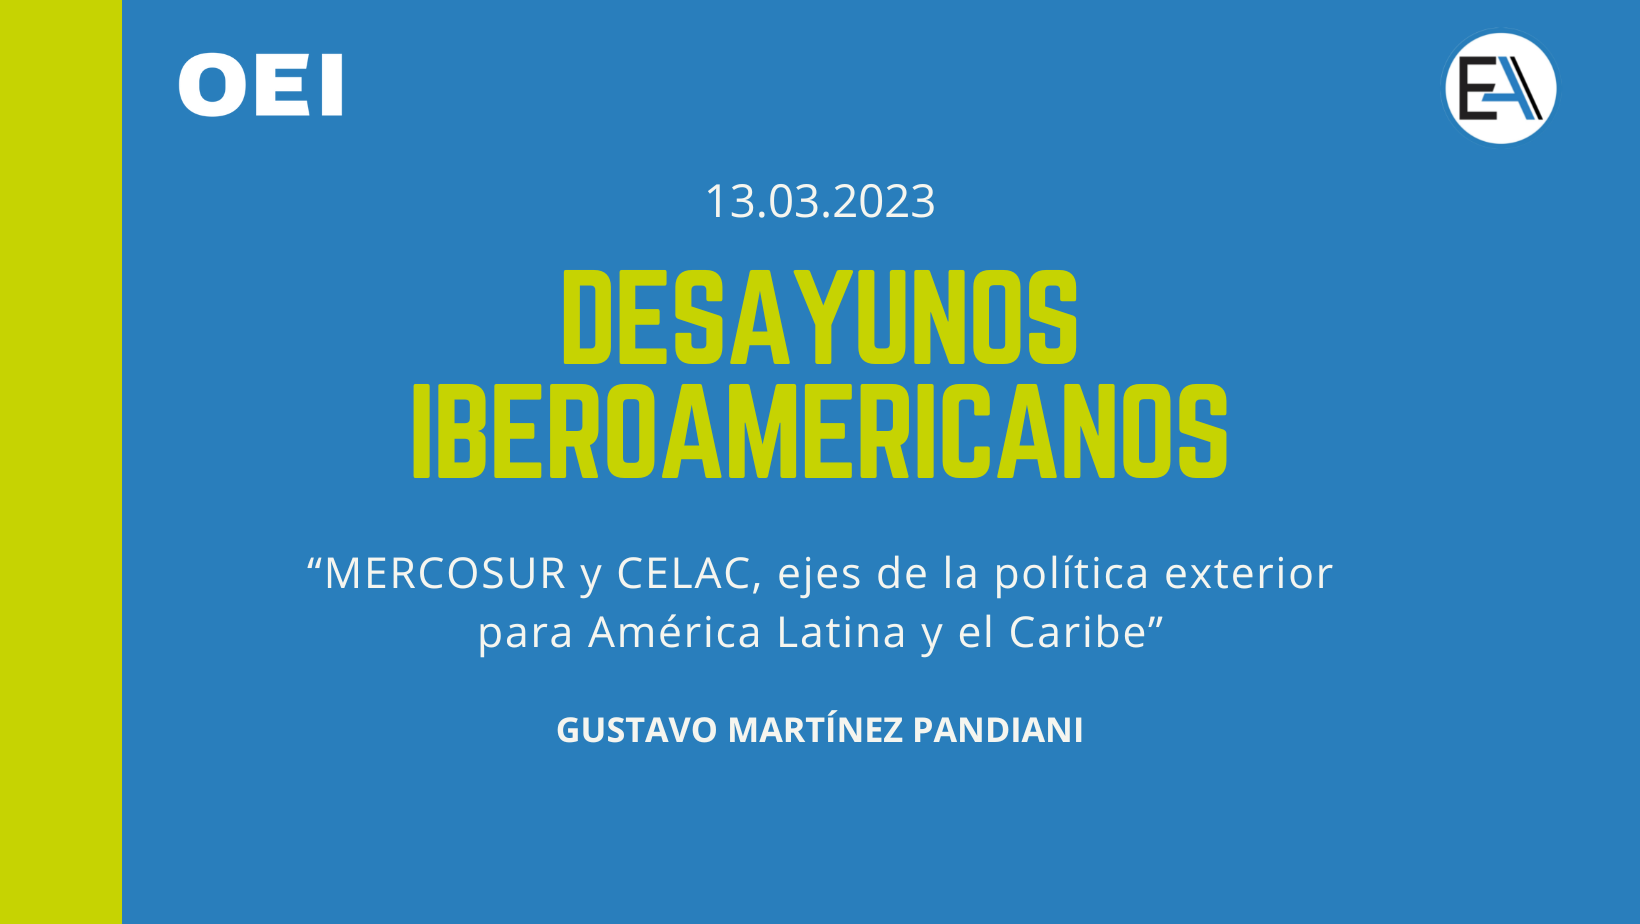 Desayunos Iberoamericanos “MERCOSUR y CELAC, ejes de la política exterior para América Latina y el Caribe”